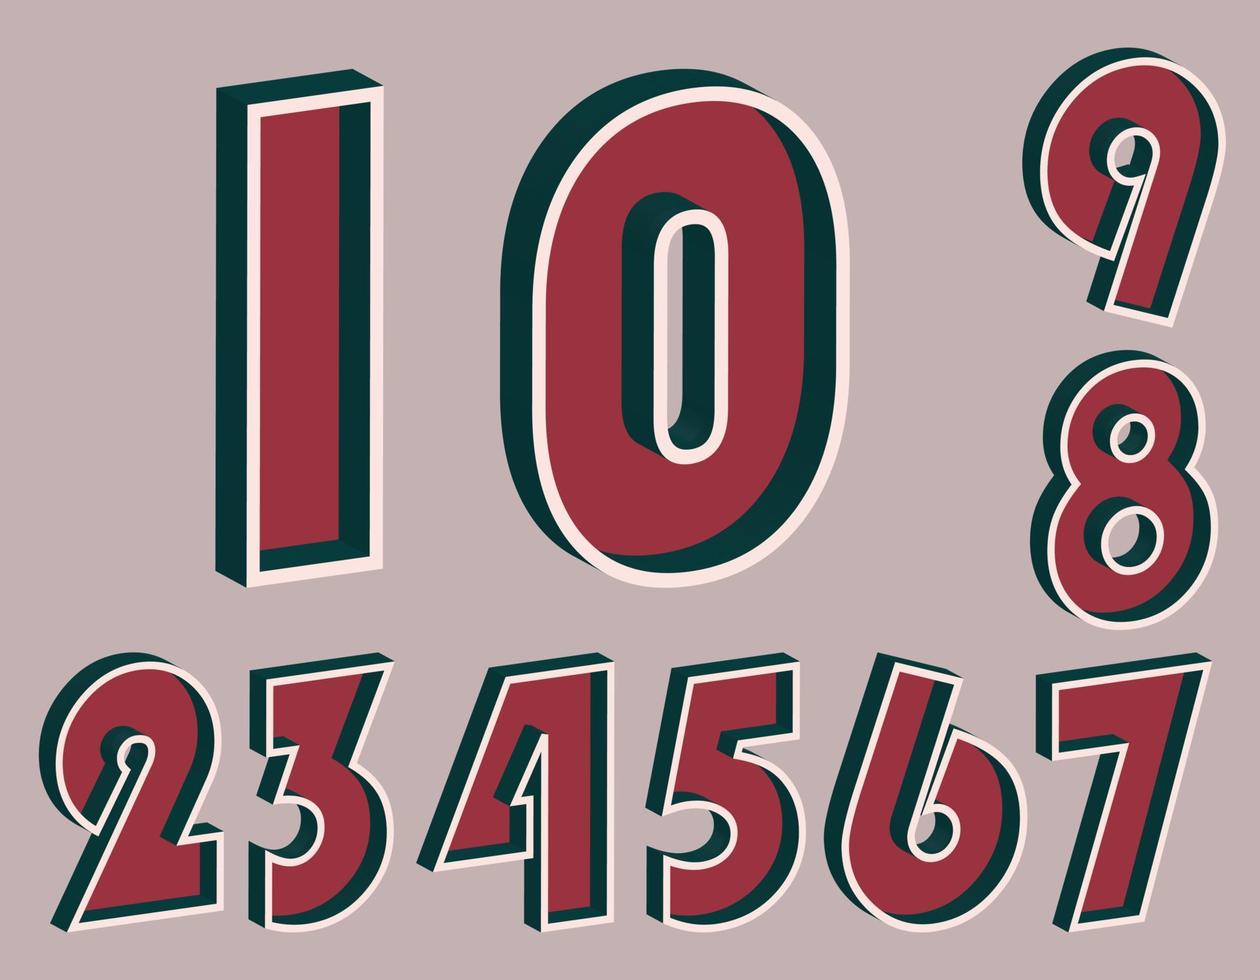 Zahlensatz von 0 bis 9 mit 3D-Effekt im Retro-Stil. gut rote und tiefe blaugrüne Farben vektor